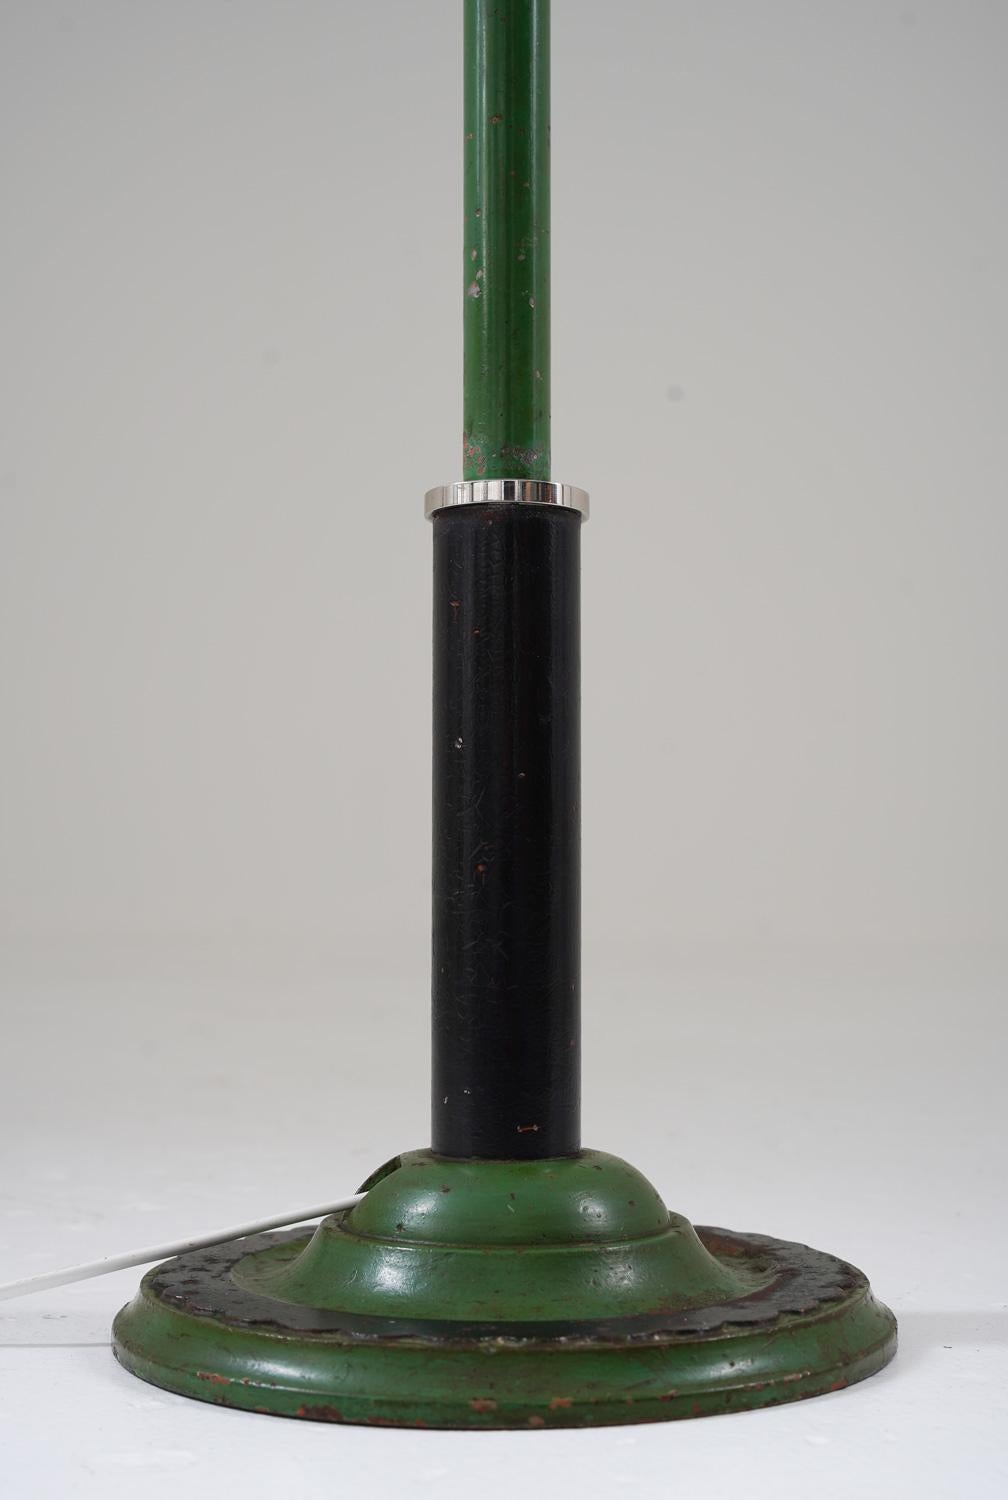 Schwedische funktionalistische Stehlampe, 1930er-Jahre (20. Jahrhundert)